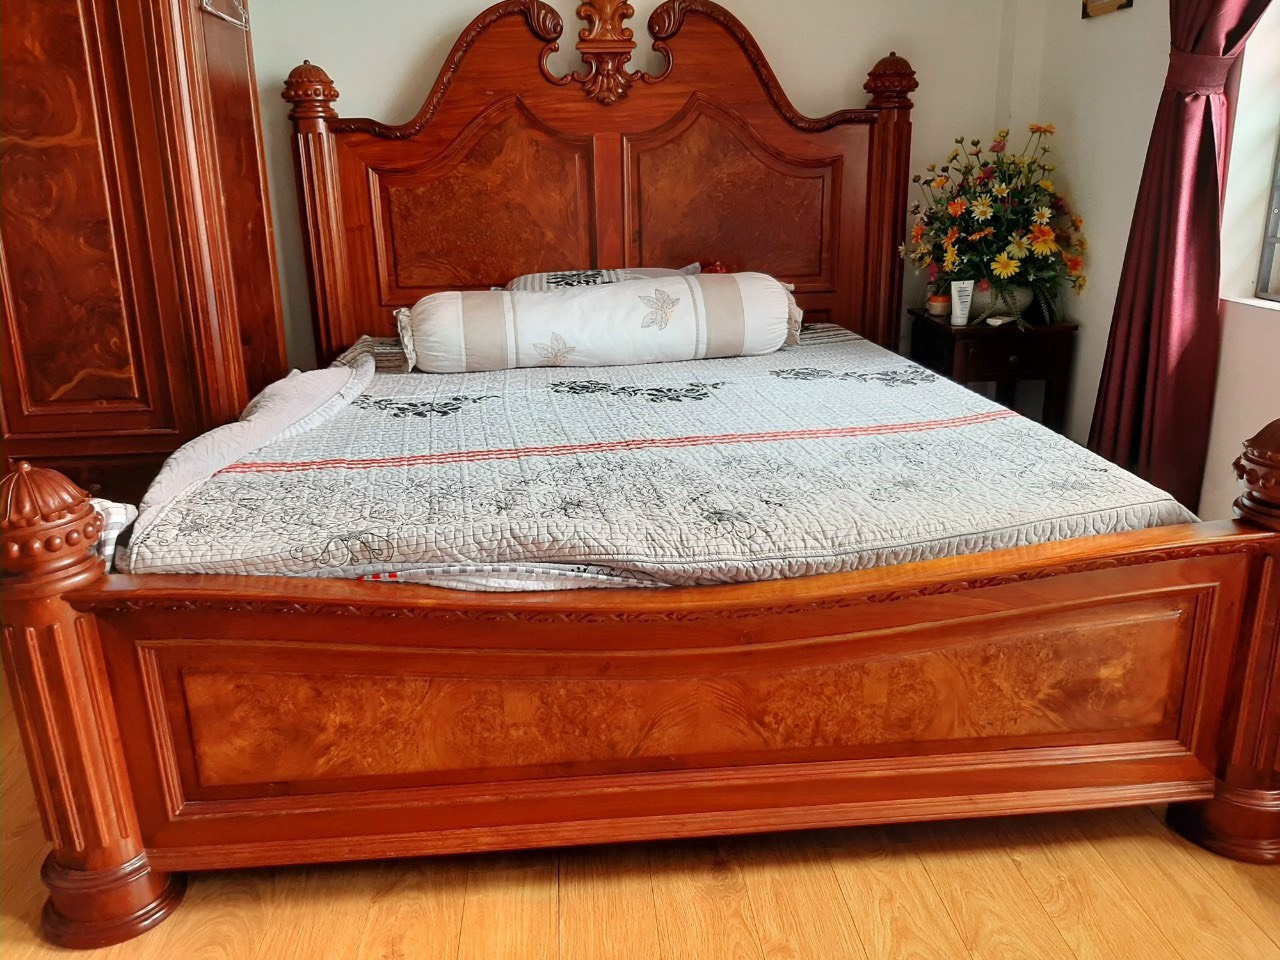 Thu mua giường gỗ cũ